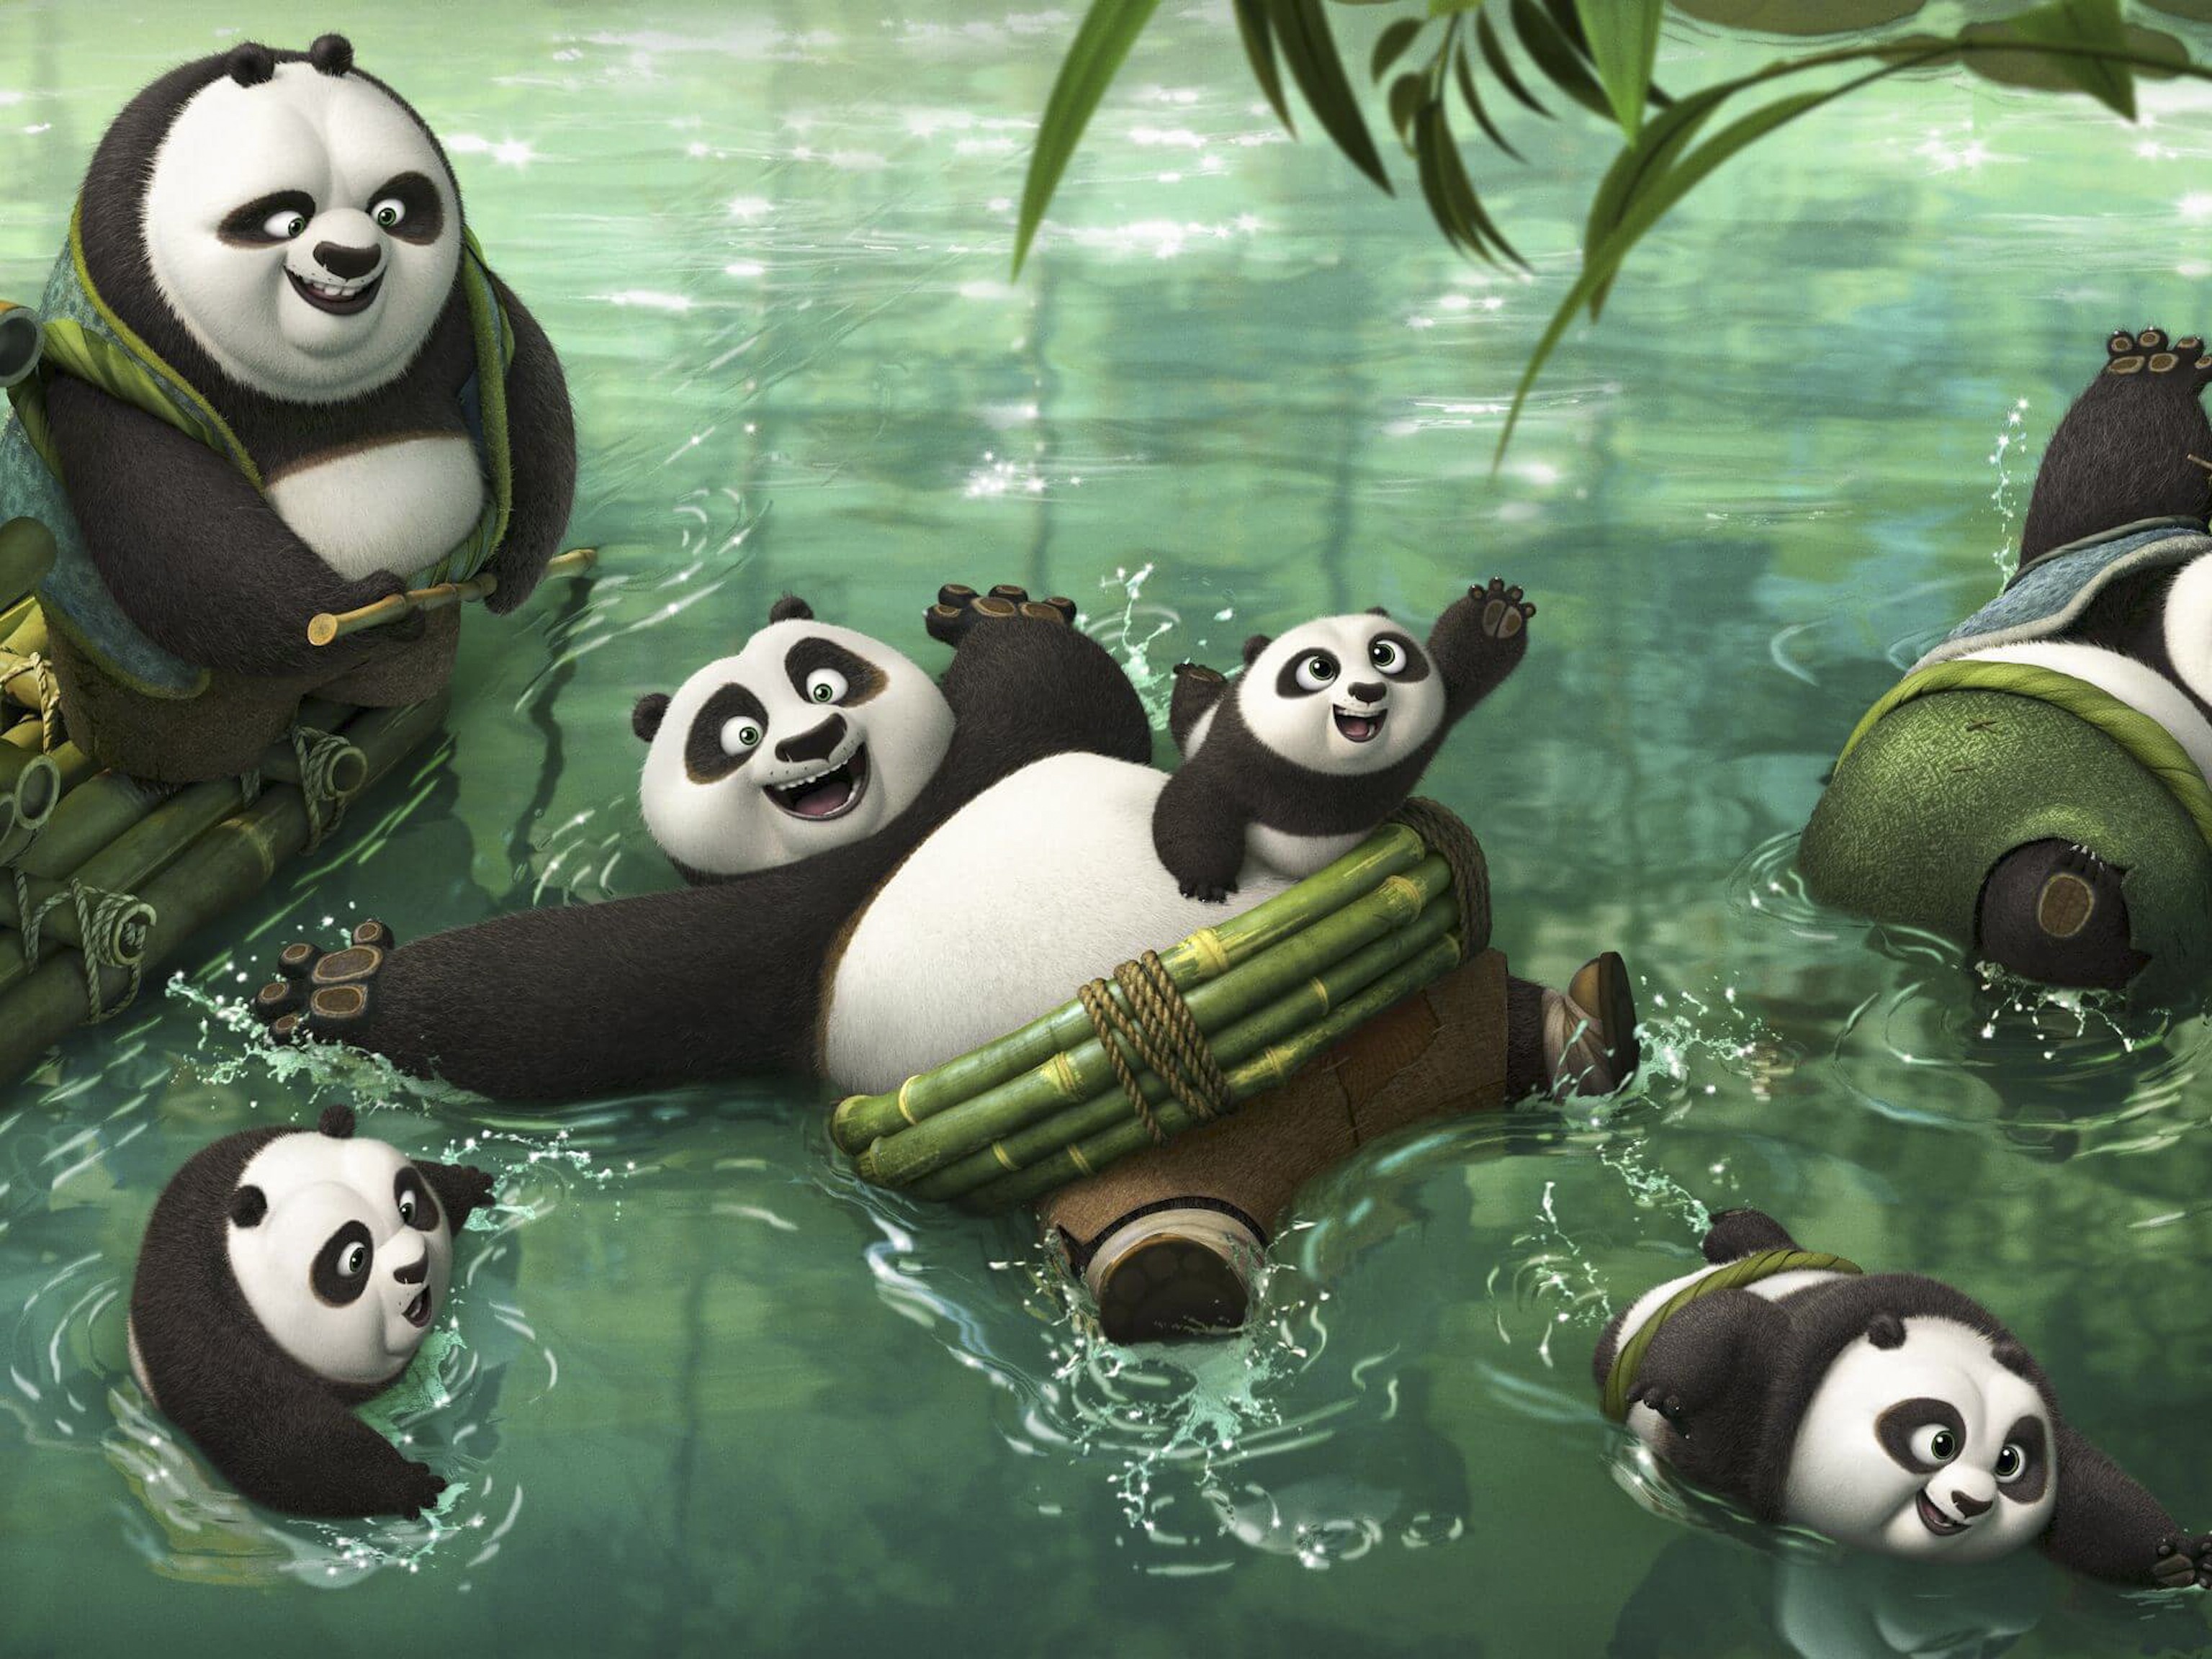 Chinese animation studio behind Kung Fu Panda 3 dreams of global box office  success | South China Morning Post